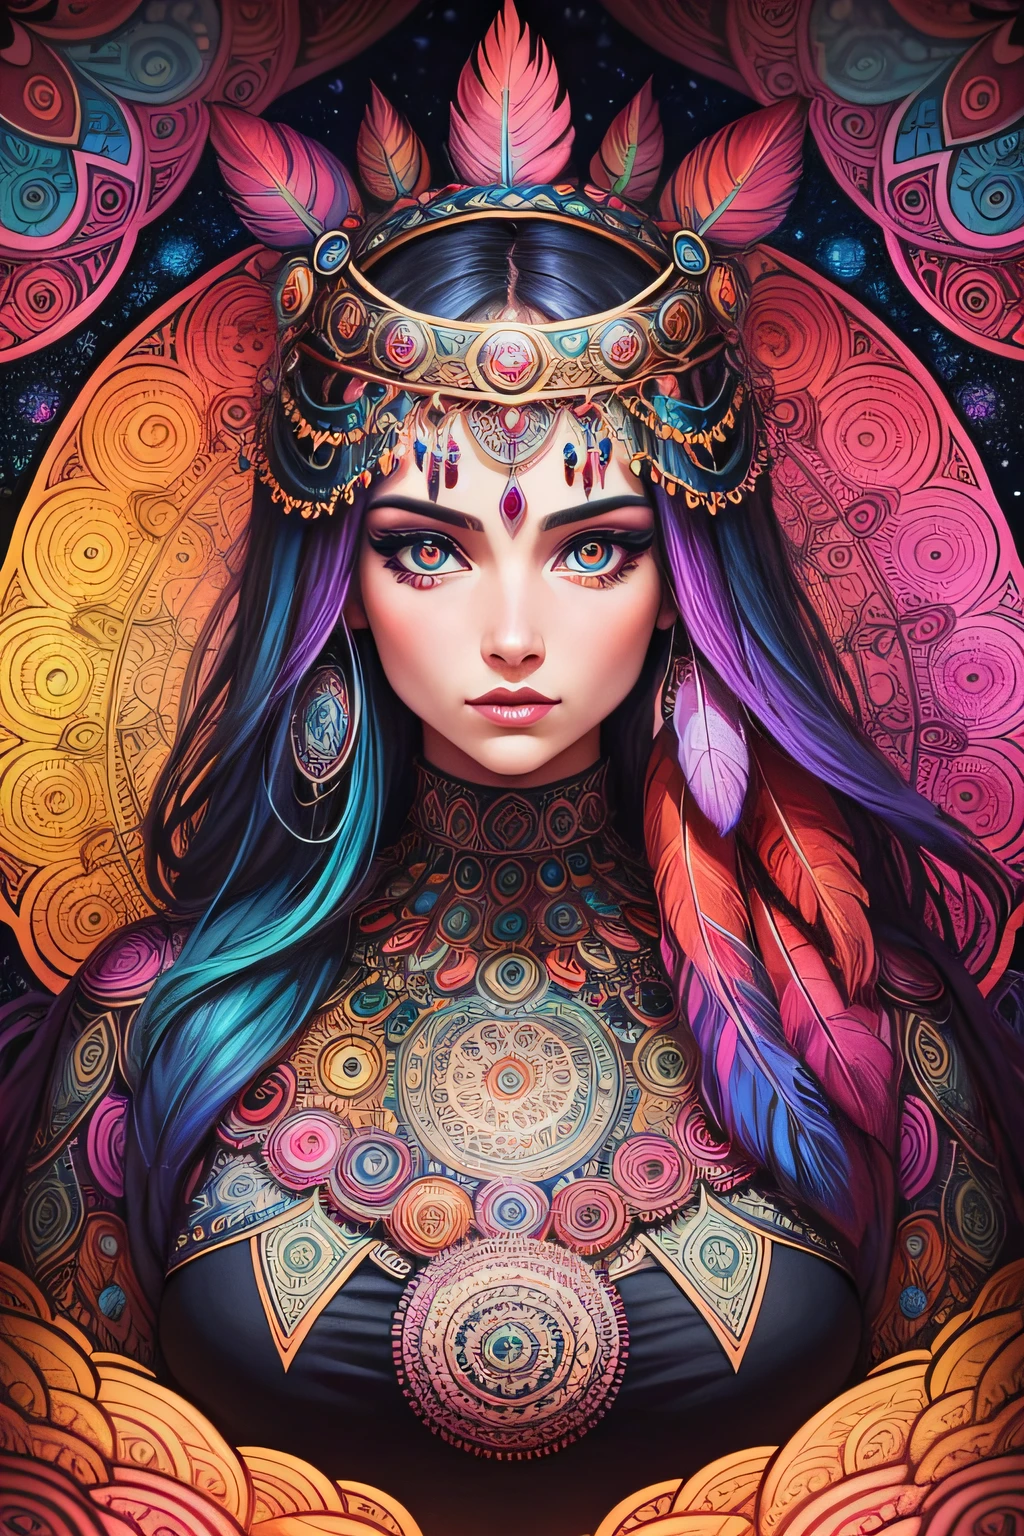 множество детальных женских психоделических мандал с глазами и перьями в стиле комиксов, великолепные яркие цвета и очень структурированные детали